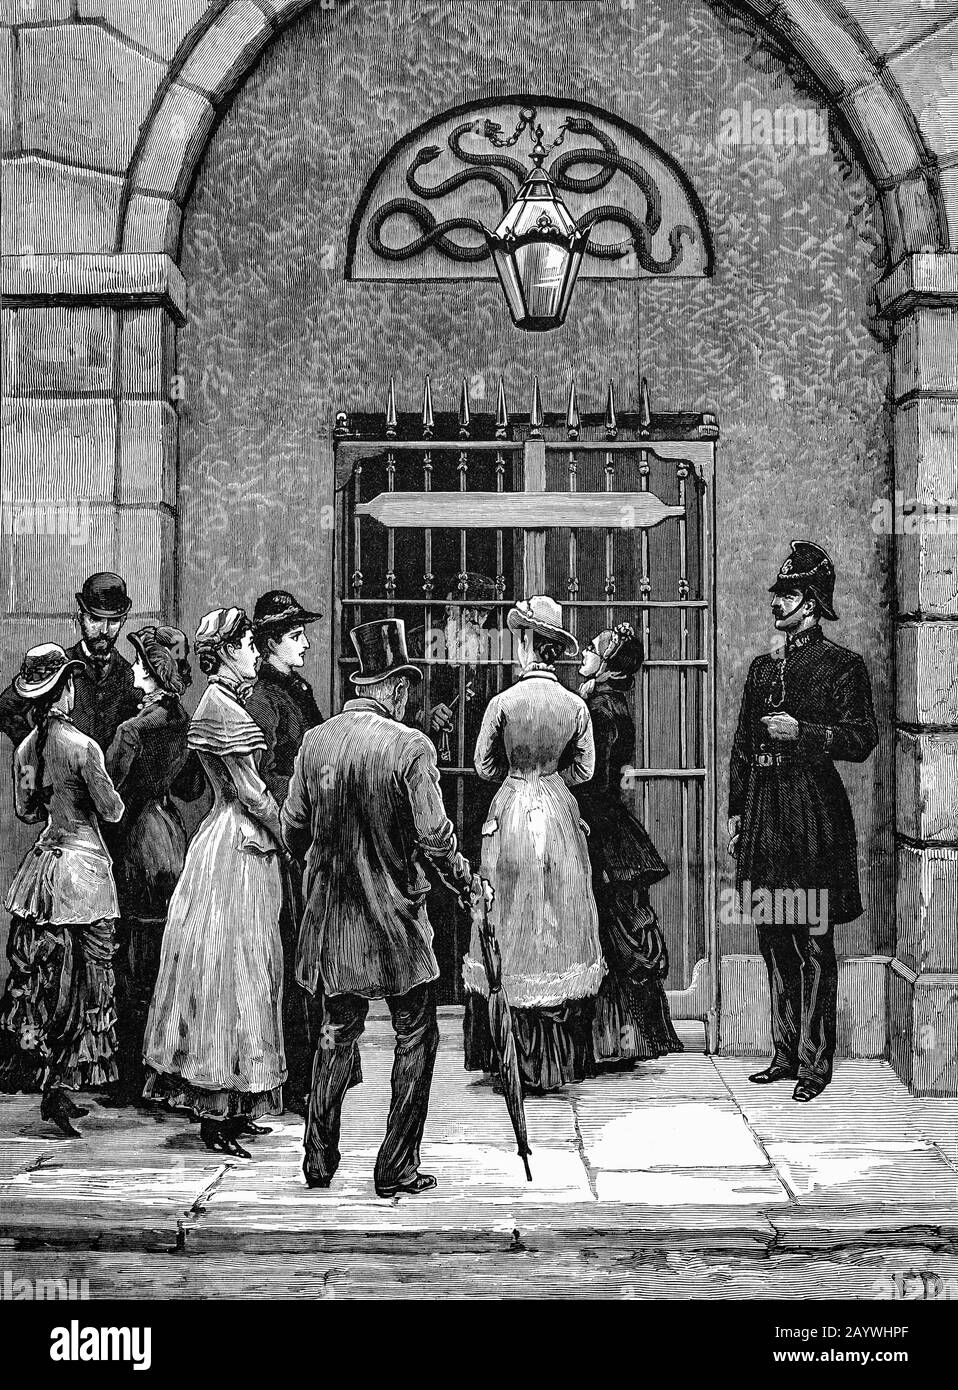 Visiteurs à l'extérieur de l'entrée de la prison de Kilmainham, à Dublin, en Irlande, au moment de l'incarcération de Charles Stewart Parnell (1846-1891), politicien nationaliste irlandais qui a été chef du Parti parlementaire irlandais de 1882 à 1891 et chef de la Home Rule League de 1880 à 1882. Lorsque le propre journal de Parnell, l'Irlande unie, a attaqué l'Actand Land Actand, il a été arrêté le 13 octobre 1881, avec ses lieutenants de parti et emprisonné en vertu d'une loi de Coercition proclamée pour "l'abottage de la loi foncière", signée par Parnell appelant à une grève nationale de loyer d'agriculteur locataire. Banque D'Images